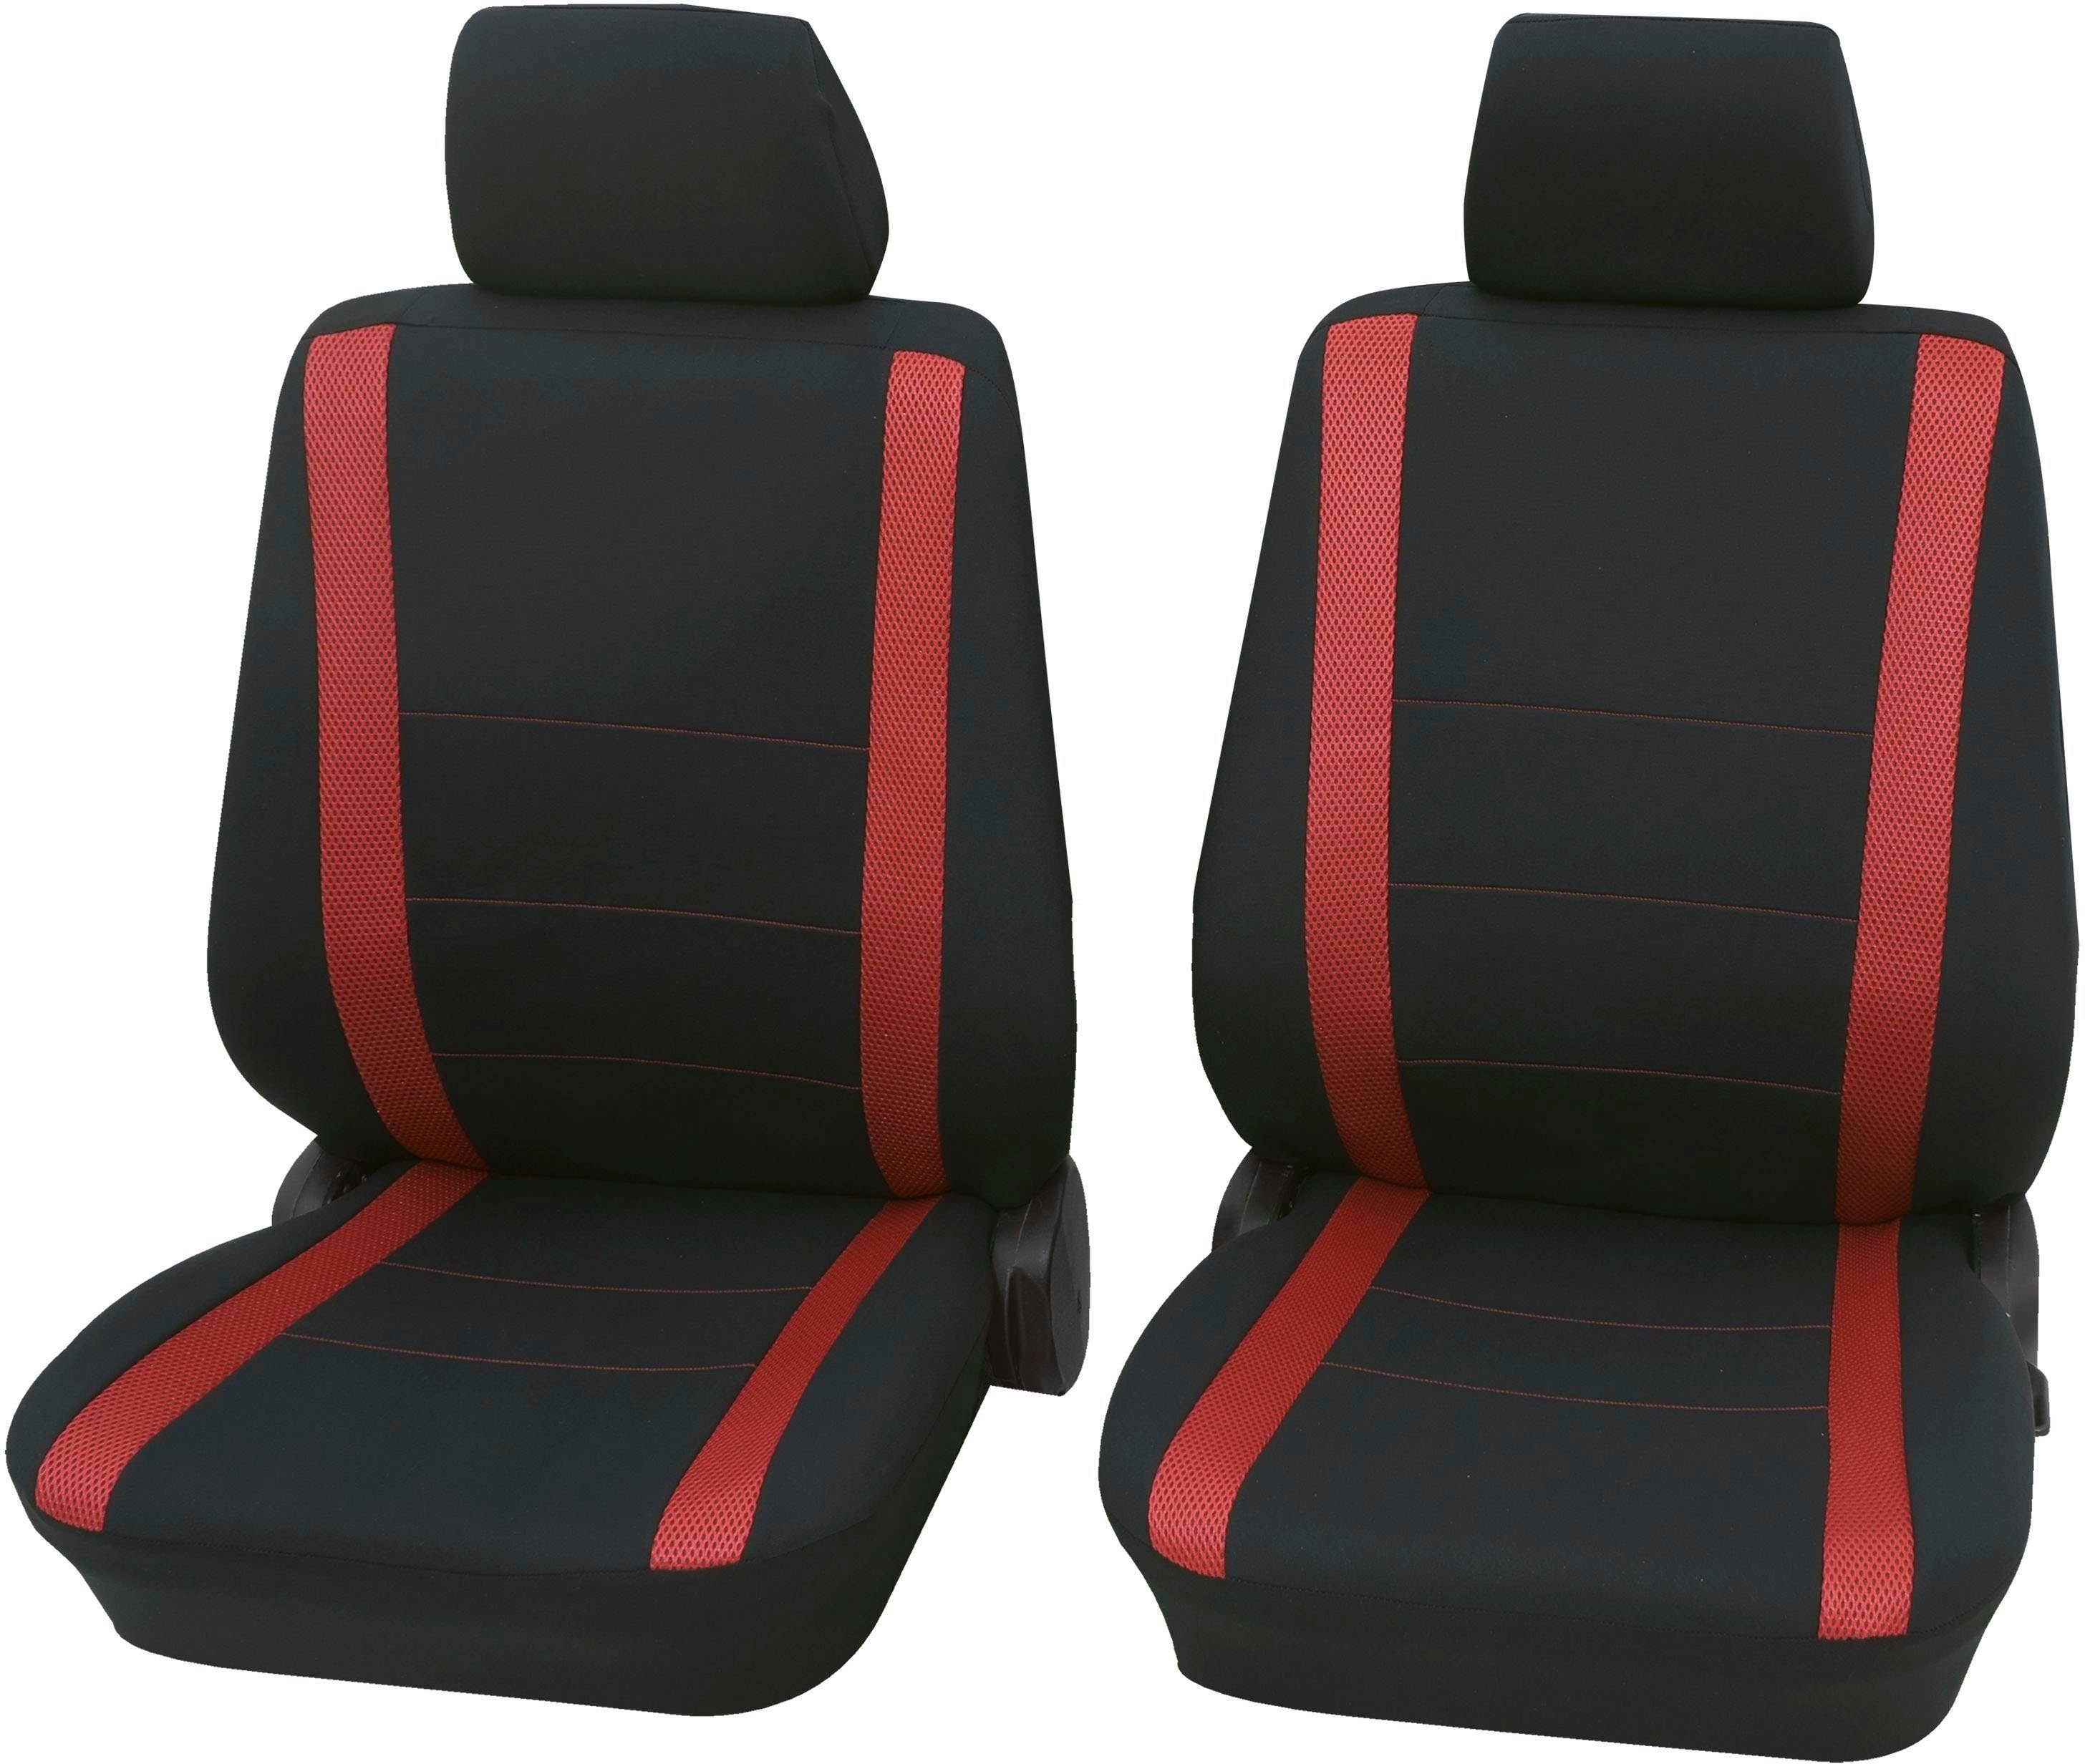 Auto Sitzbezüge Sitzbezug Schonbezüge Comfort Rot Komplettset